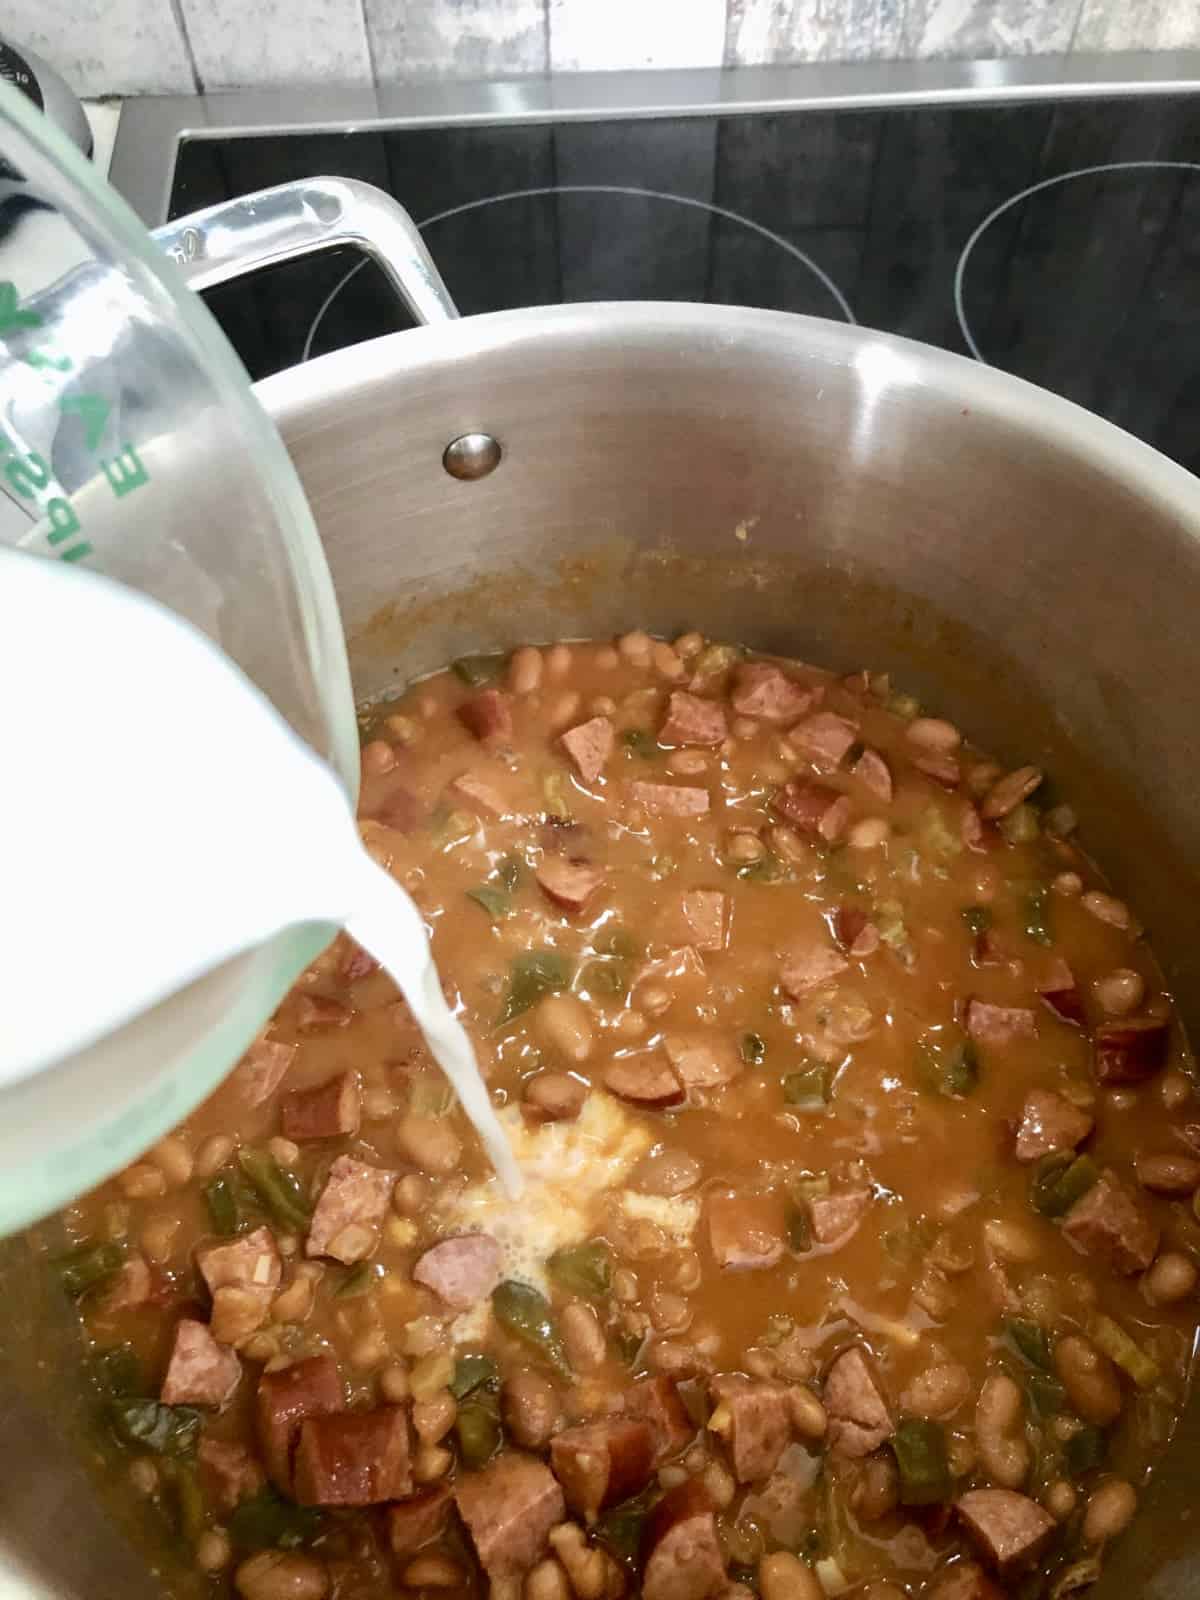 Adding milk to soup stock pot.